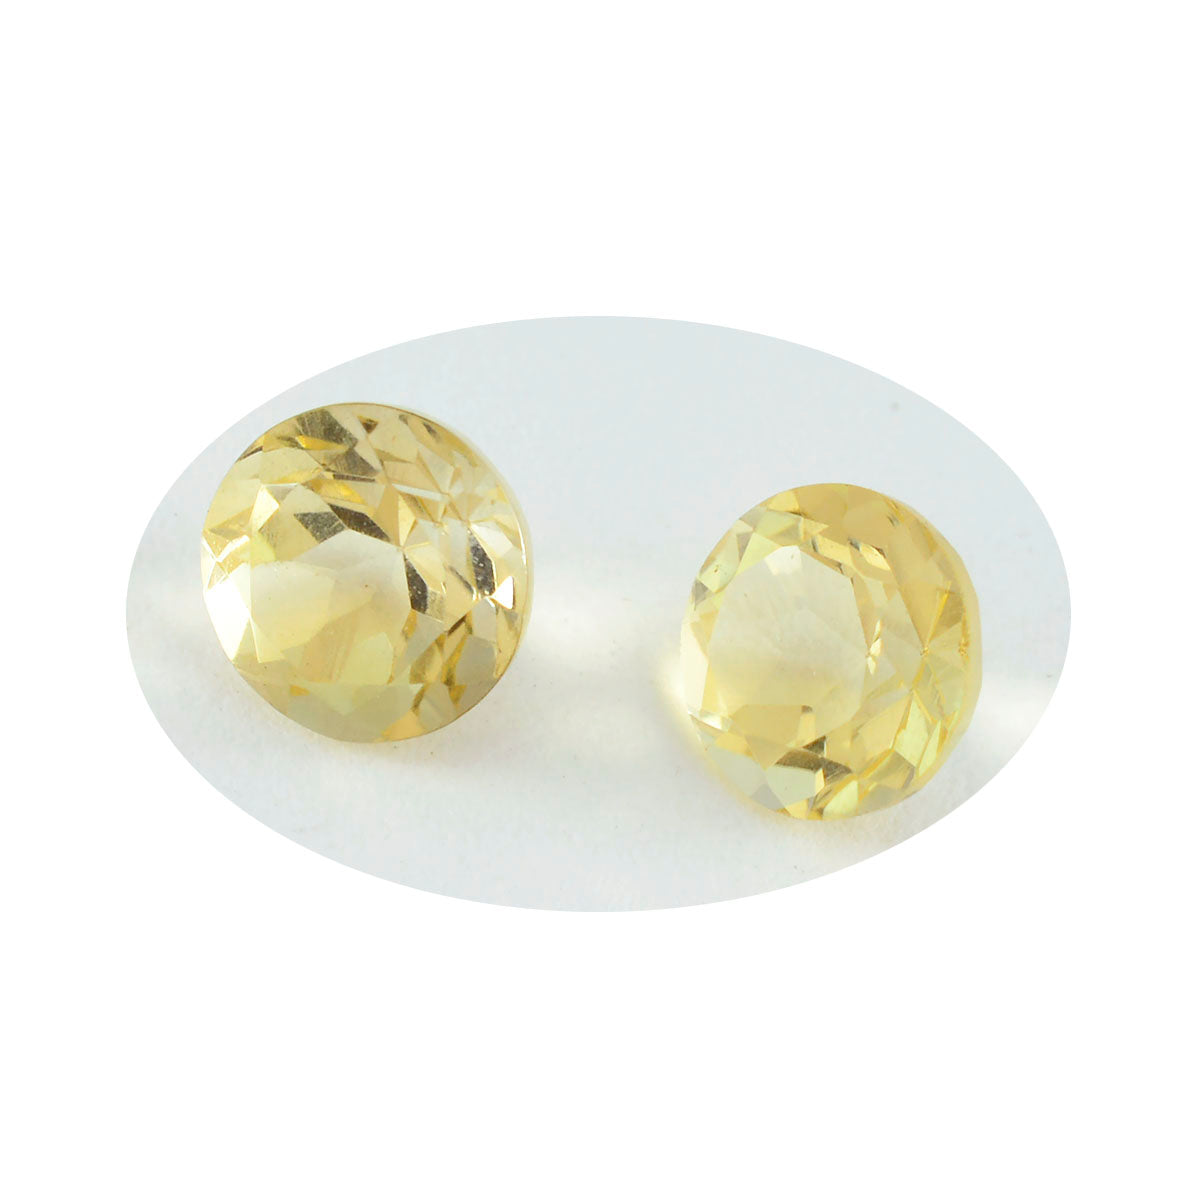 riyogems 1шт натуральный желтый цитрин ограненный 12x12 мм круглая форма качество A1 свободный драгоценный камень